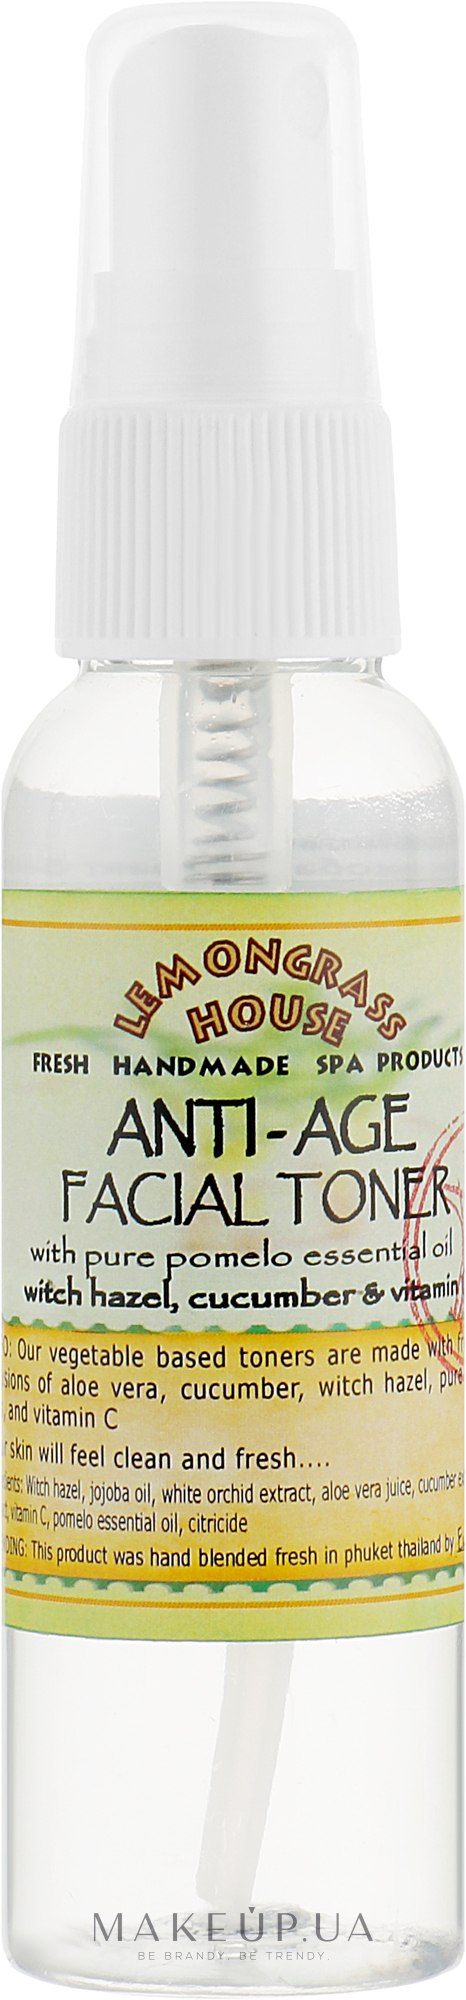 Освежающий тоник для лица "Антивозрастной" - Lemongrass House Anti-Age Facial Toner — фото 60ml